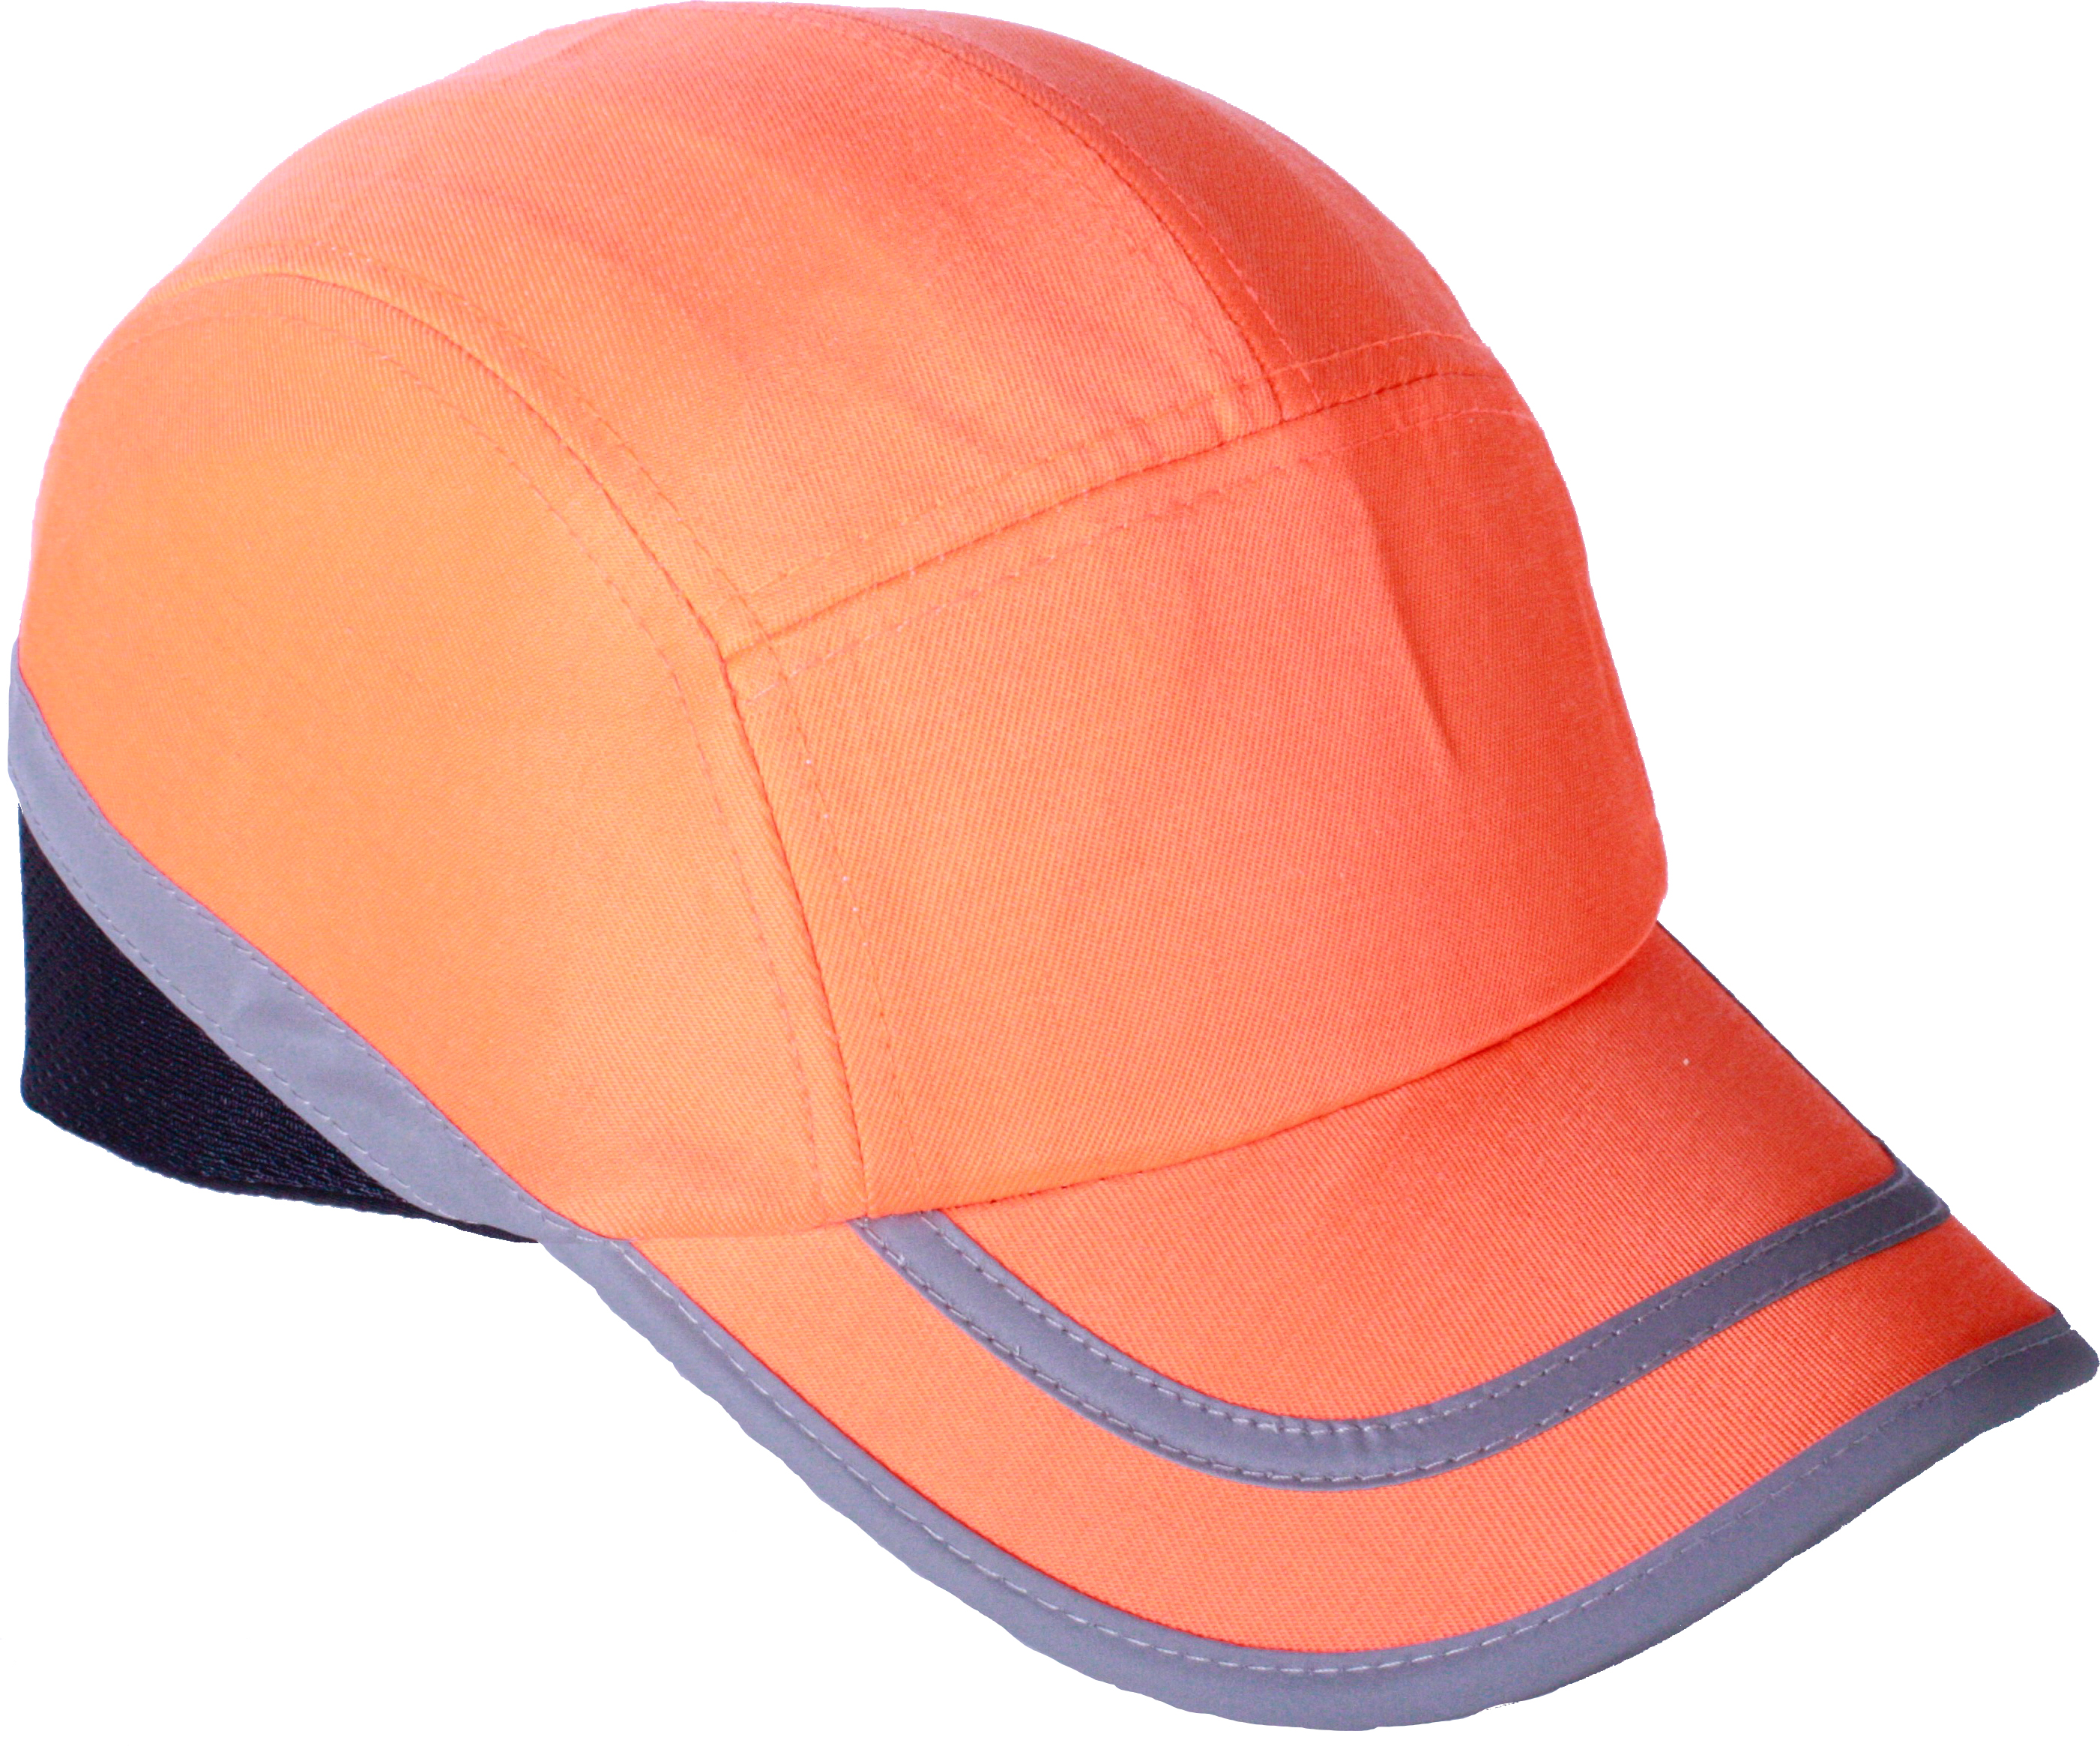 Gorras de Seguridad - Protección Craneana - Gorra con casquete